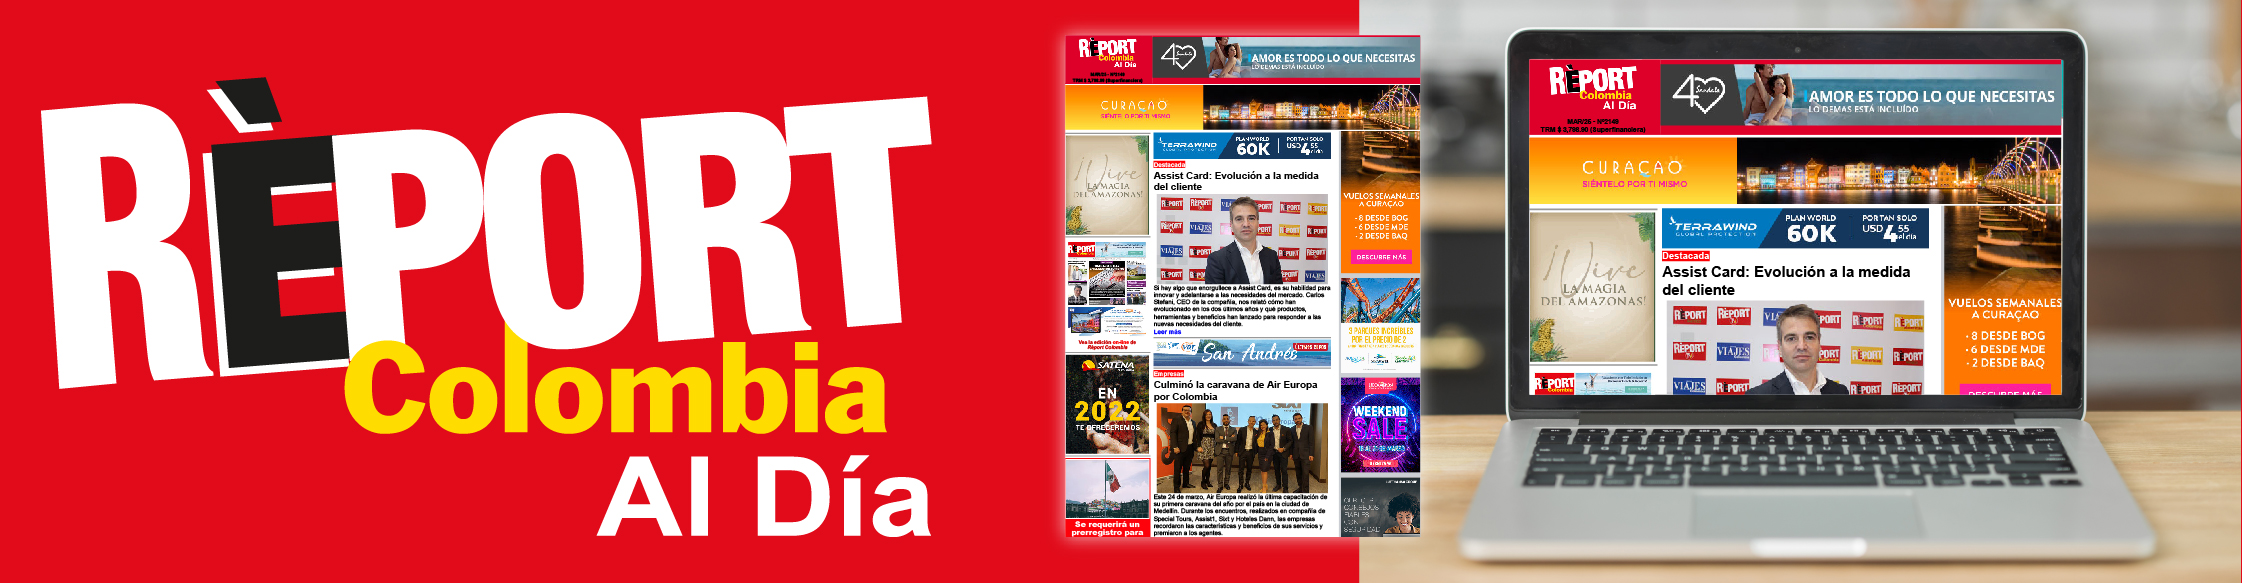 banner media kit_REPORT COLOMBIA AL DIA